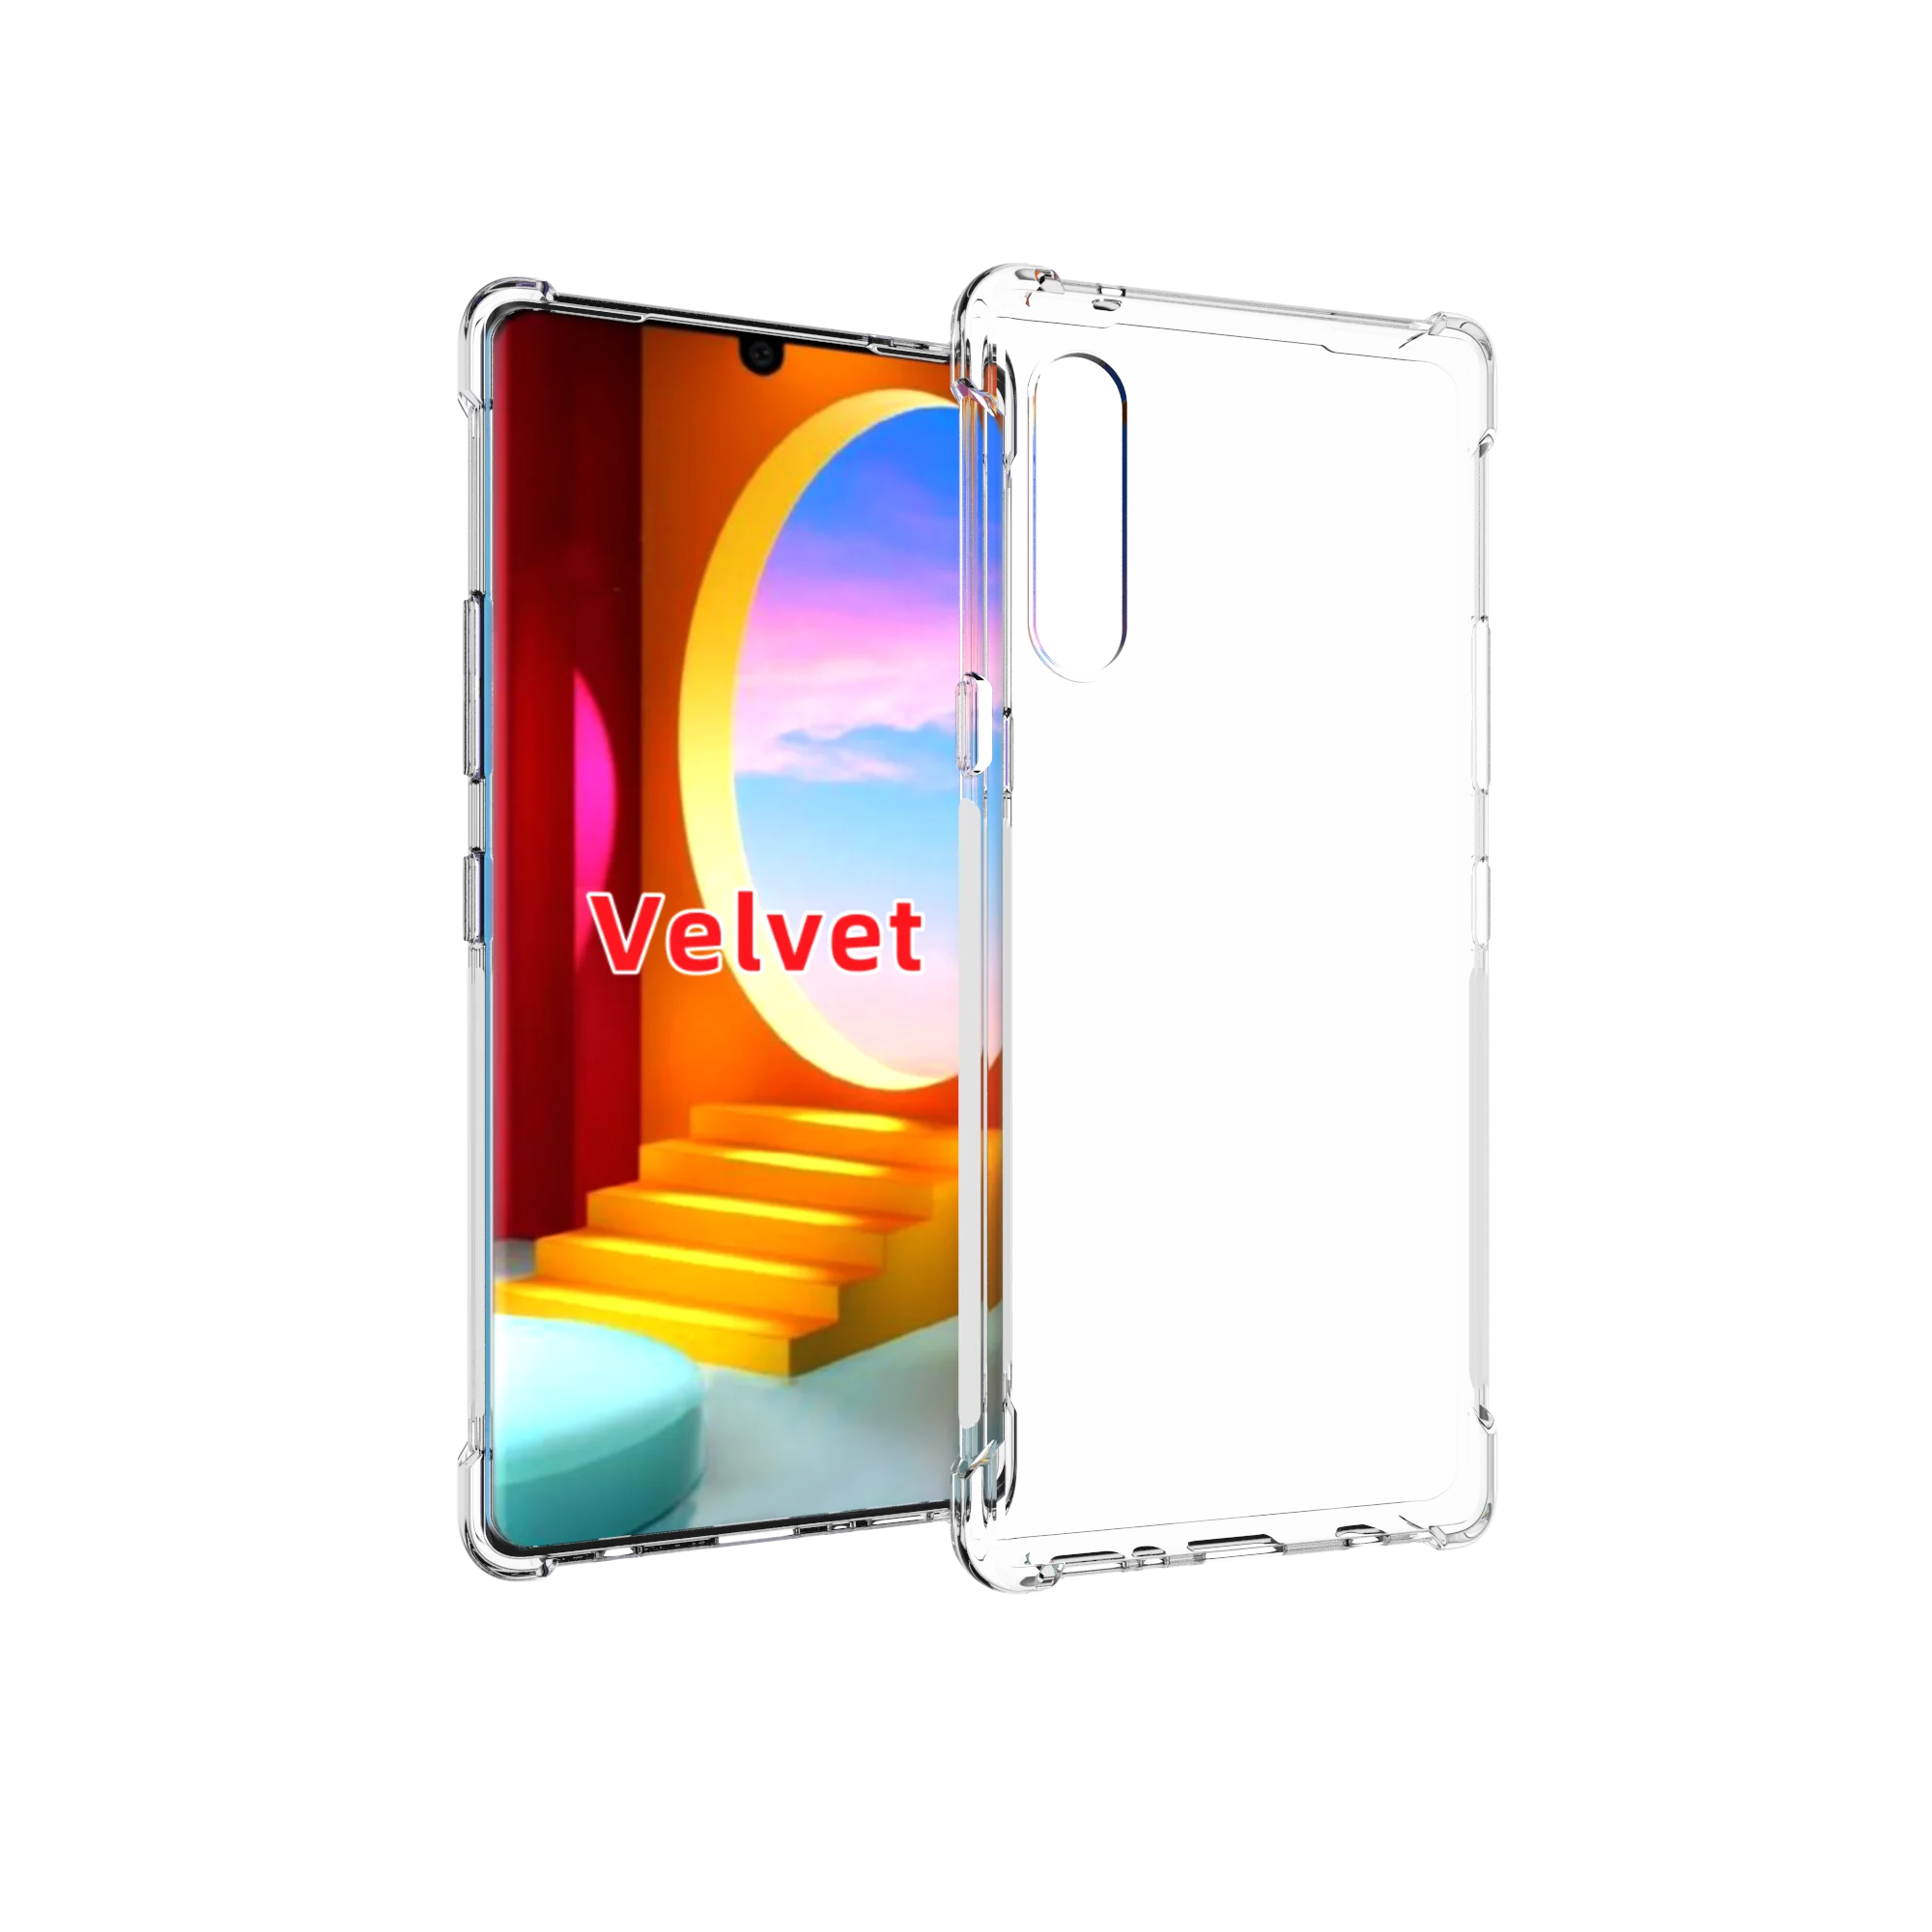 

Four Corner Shockproof Soft TPU Bumper Case For LG Velvet, Transparent